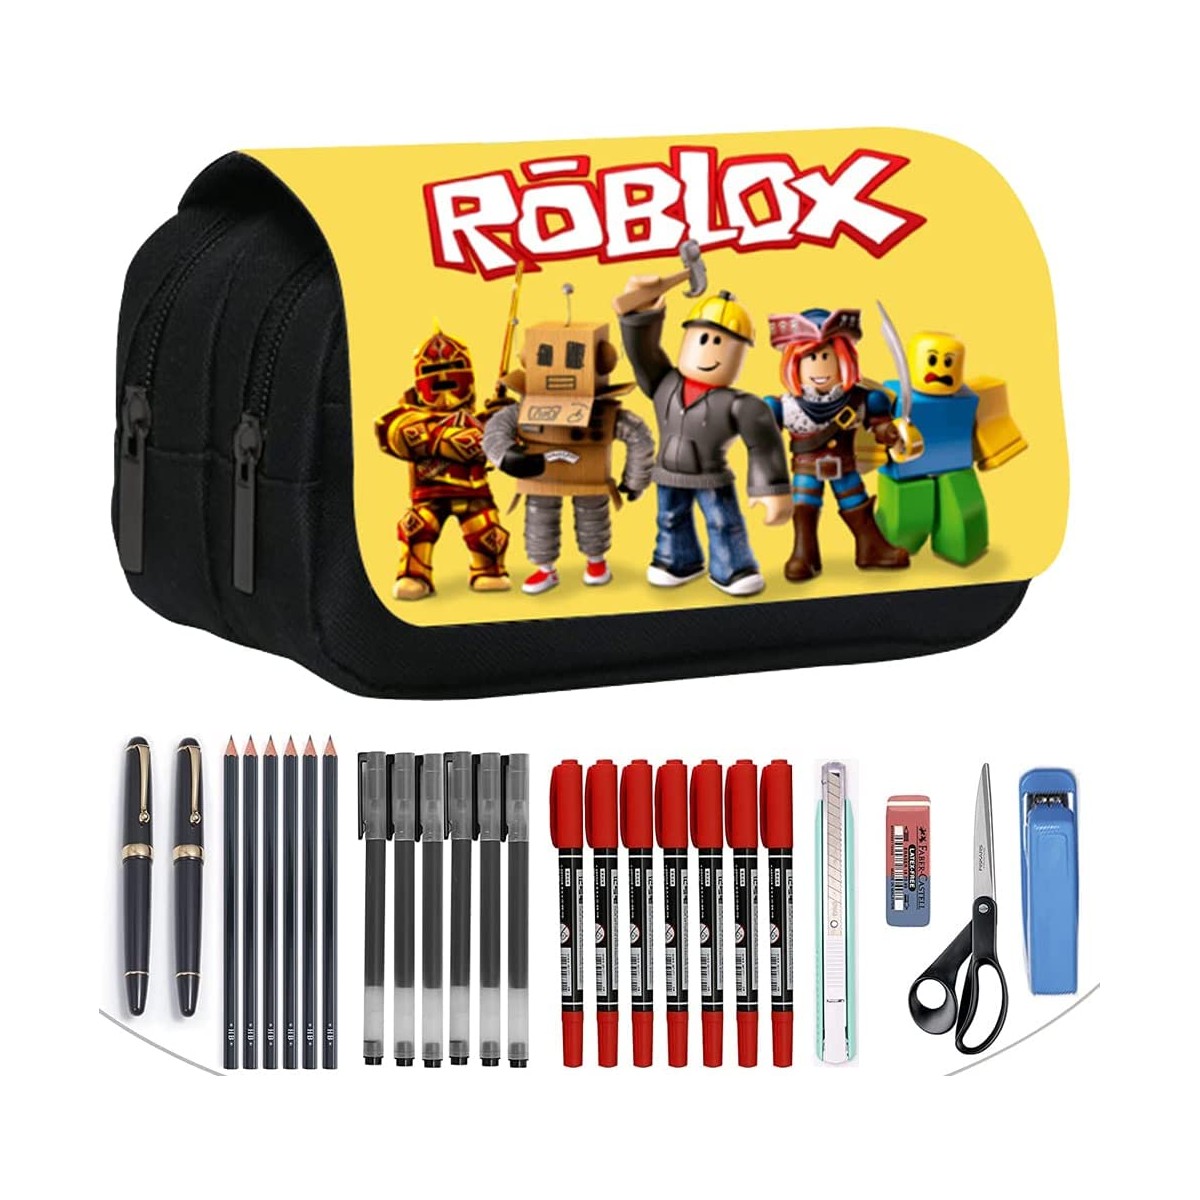 Roblox Astuccio 3D, giallo e nero, per la scuola, porta penne